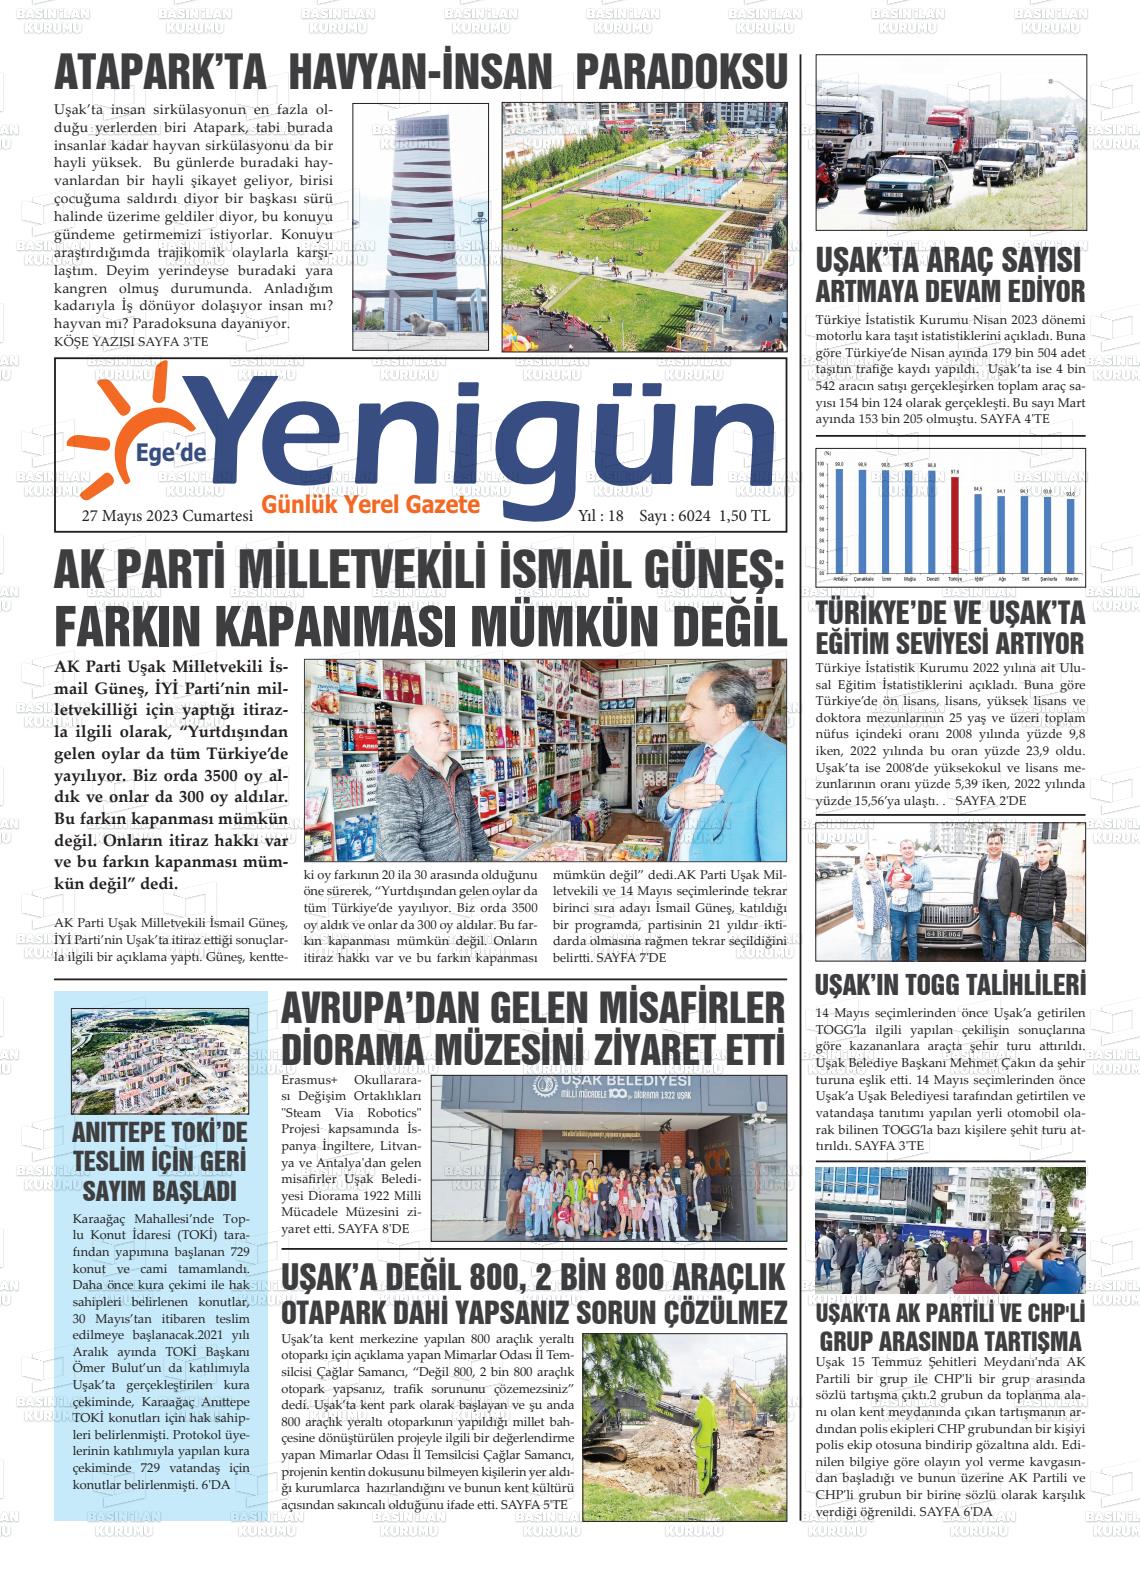 27 Mayıs 2023 EGE'DE YENİGÜN GAZETESİ Gazete Manşeti